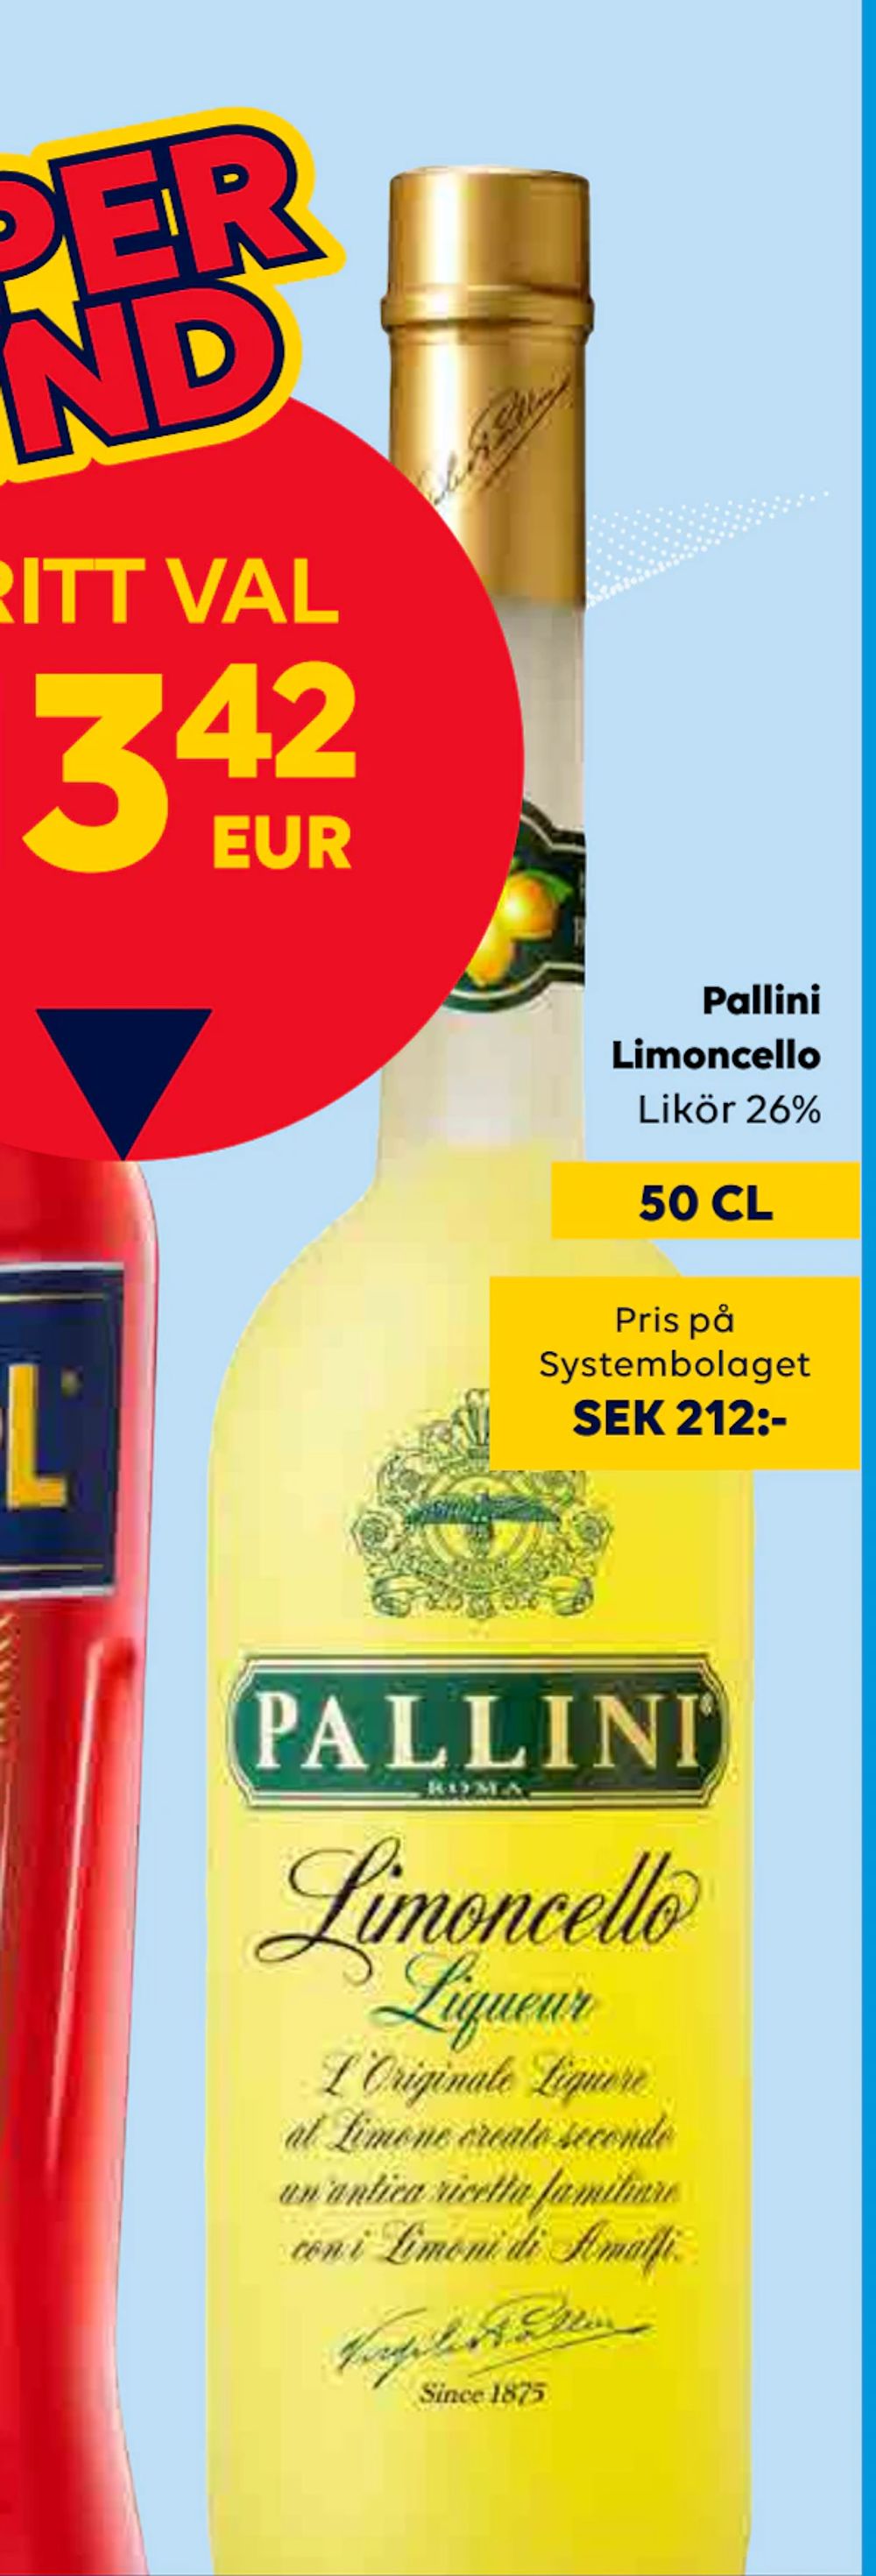 Erbjudanden på Pallini Limoncello från Bordershop för 13,42 €